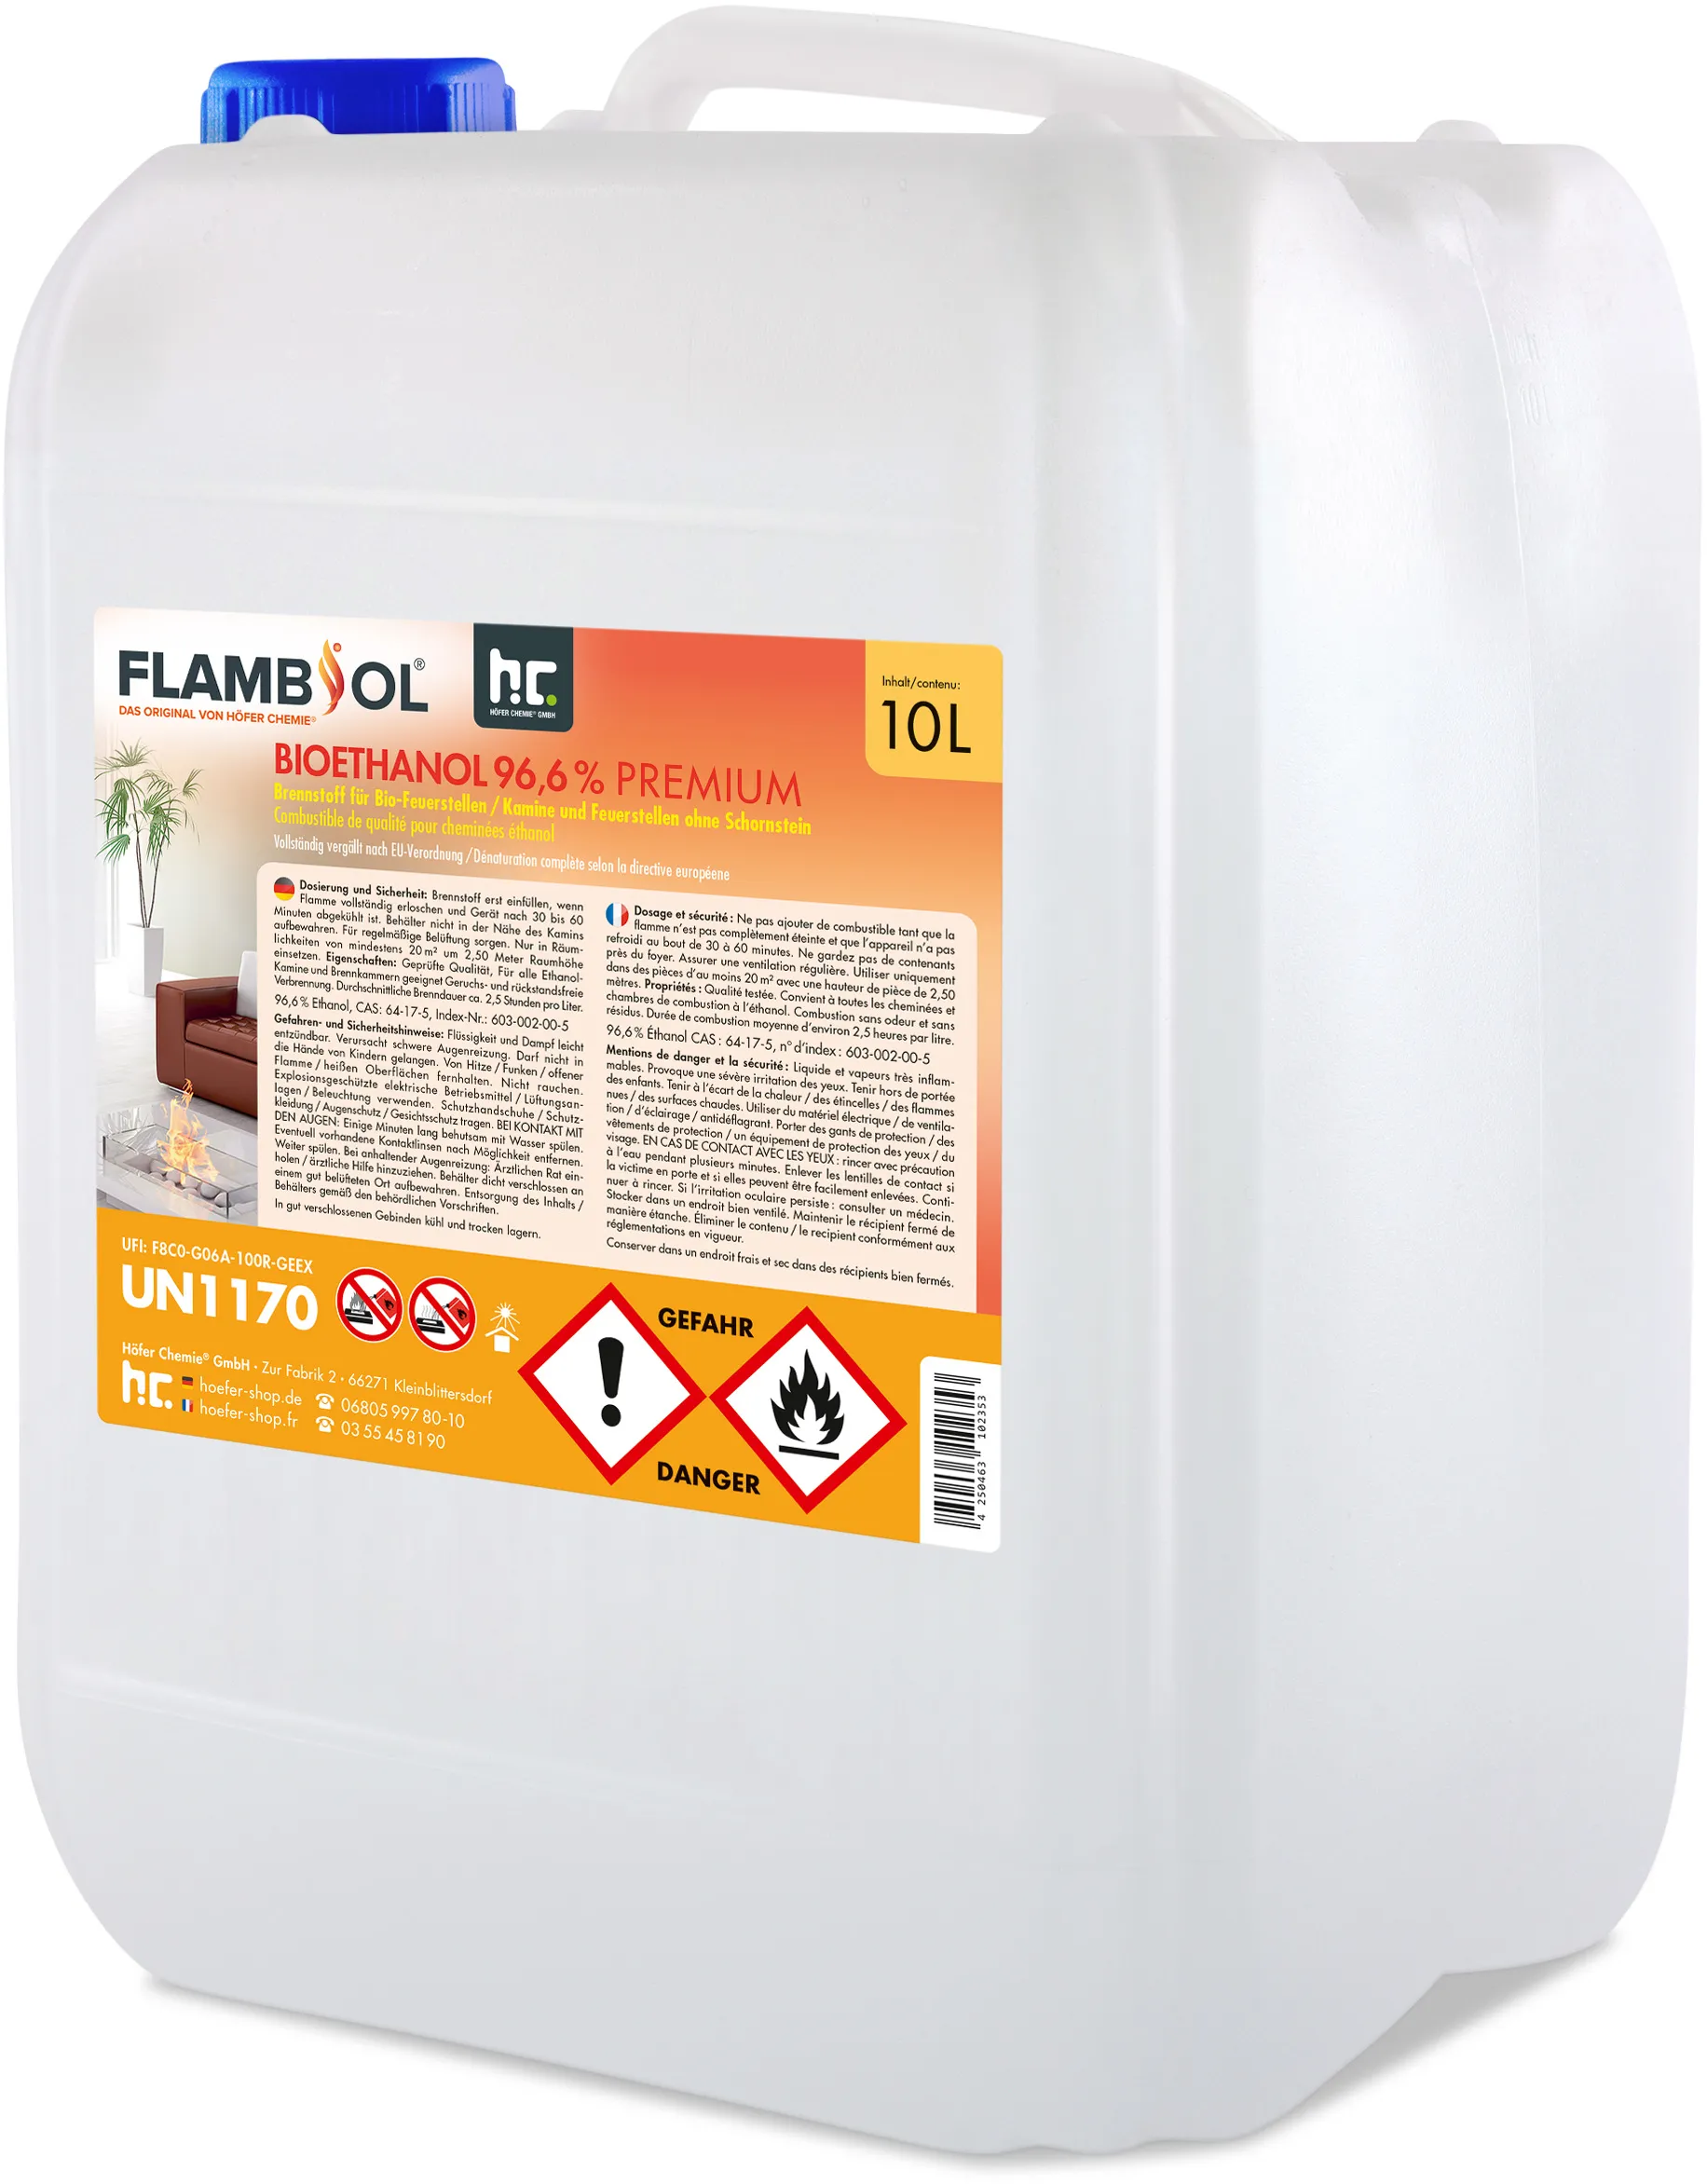 60 x 10 L FLAMBIOL® Bioéthanol 96,6% Premium pour cheminée à éthanol en bidons